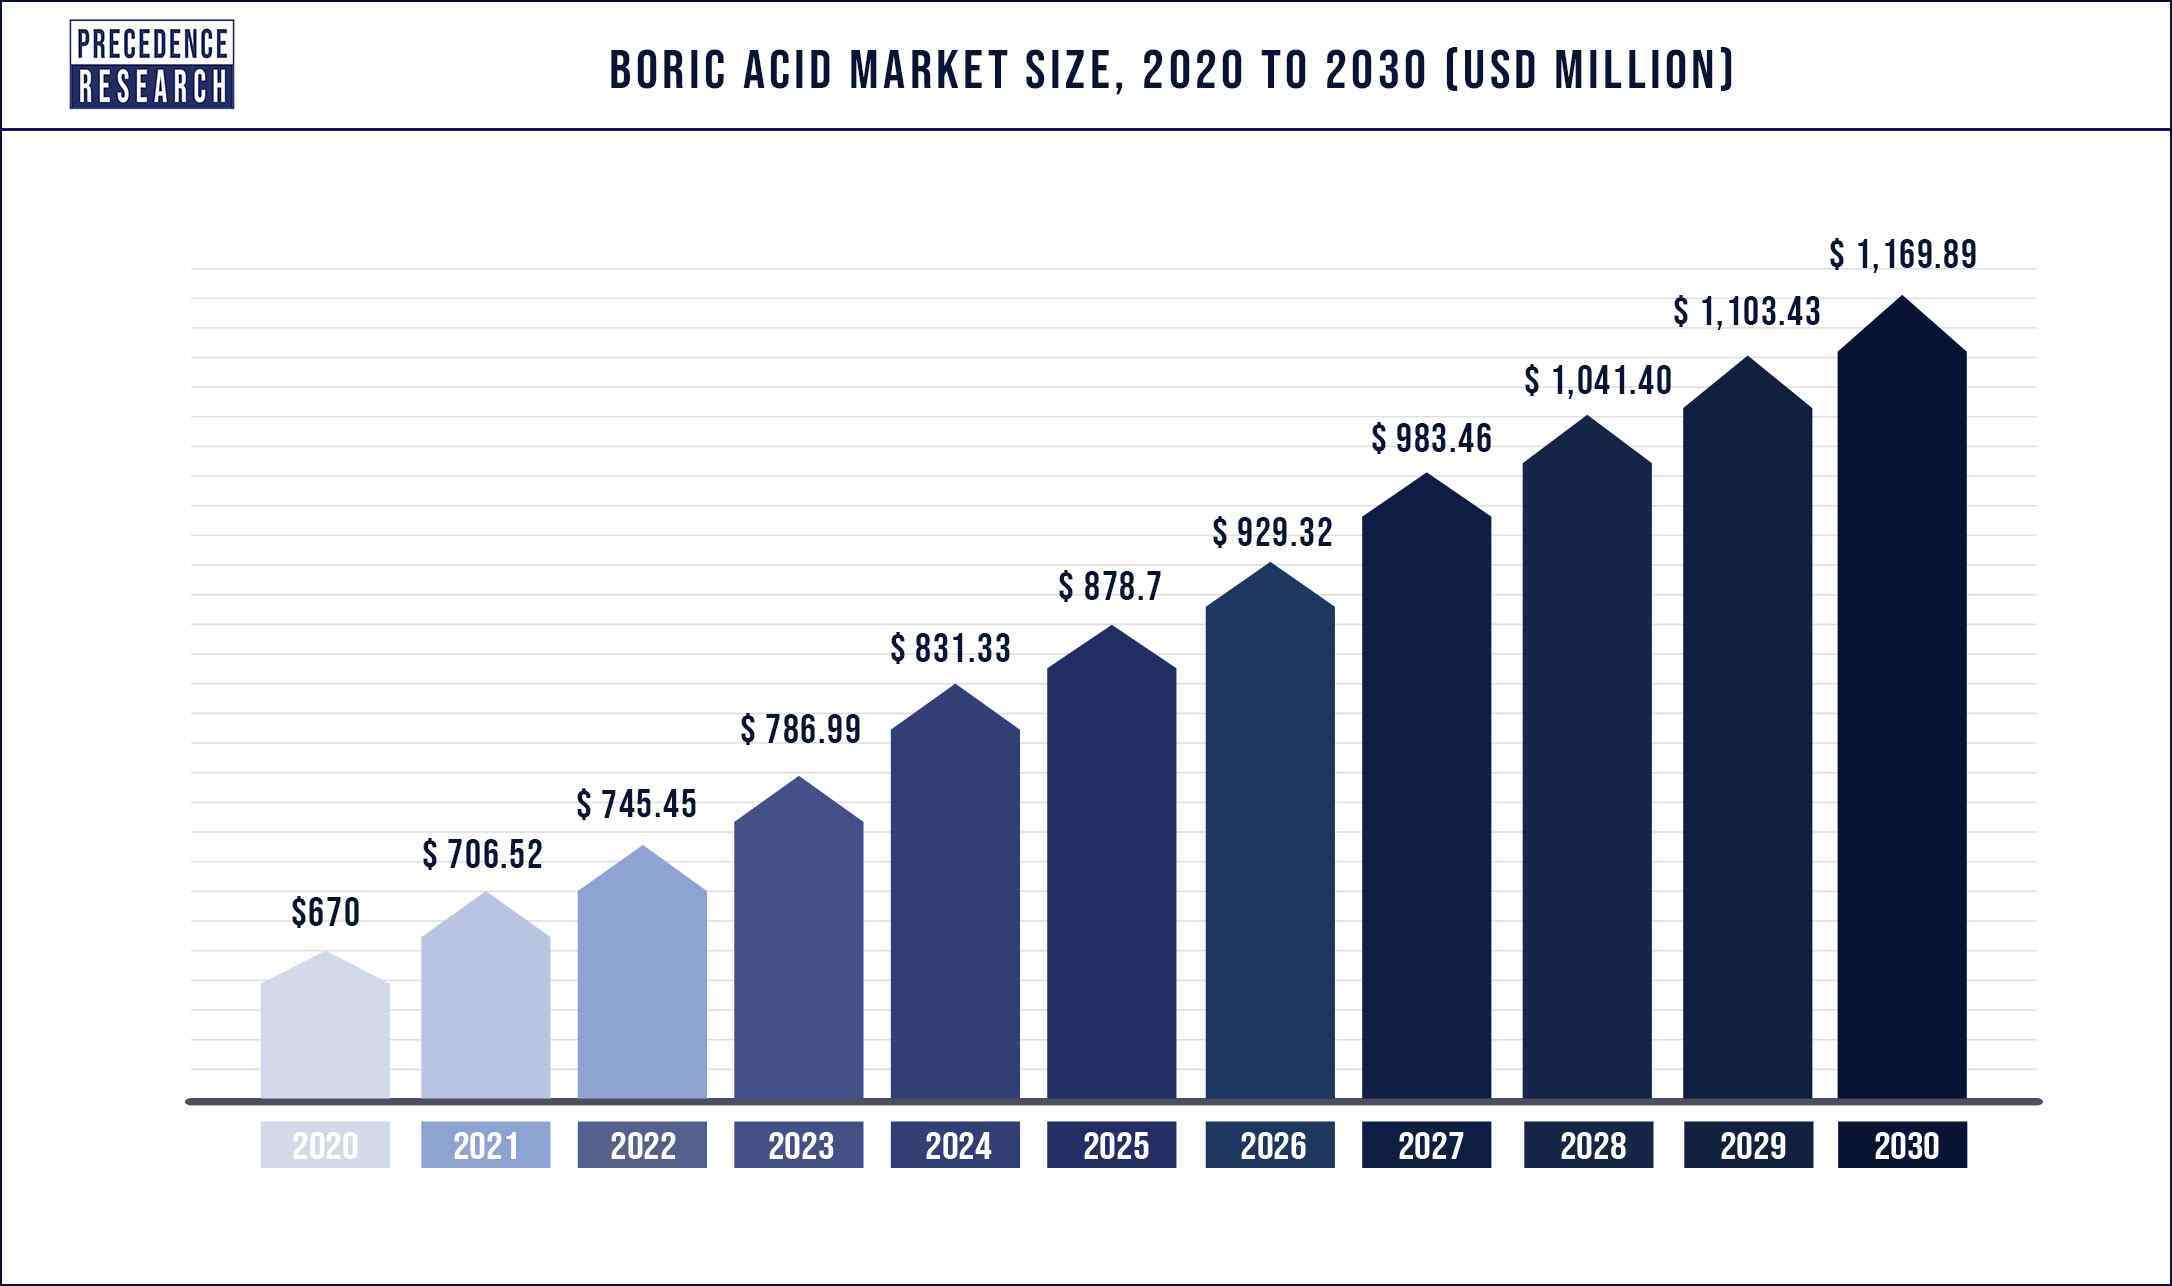 Boric Acid Market Size 2020-2030